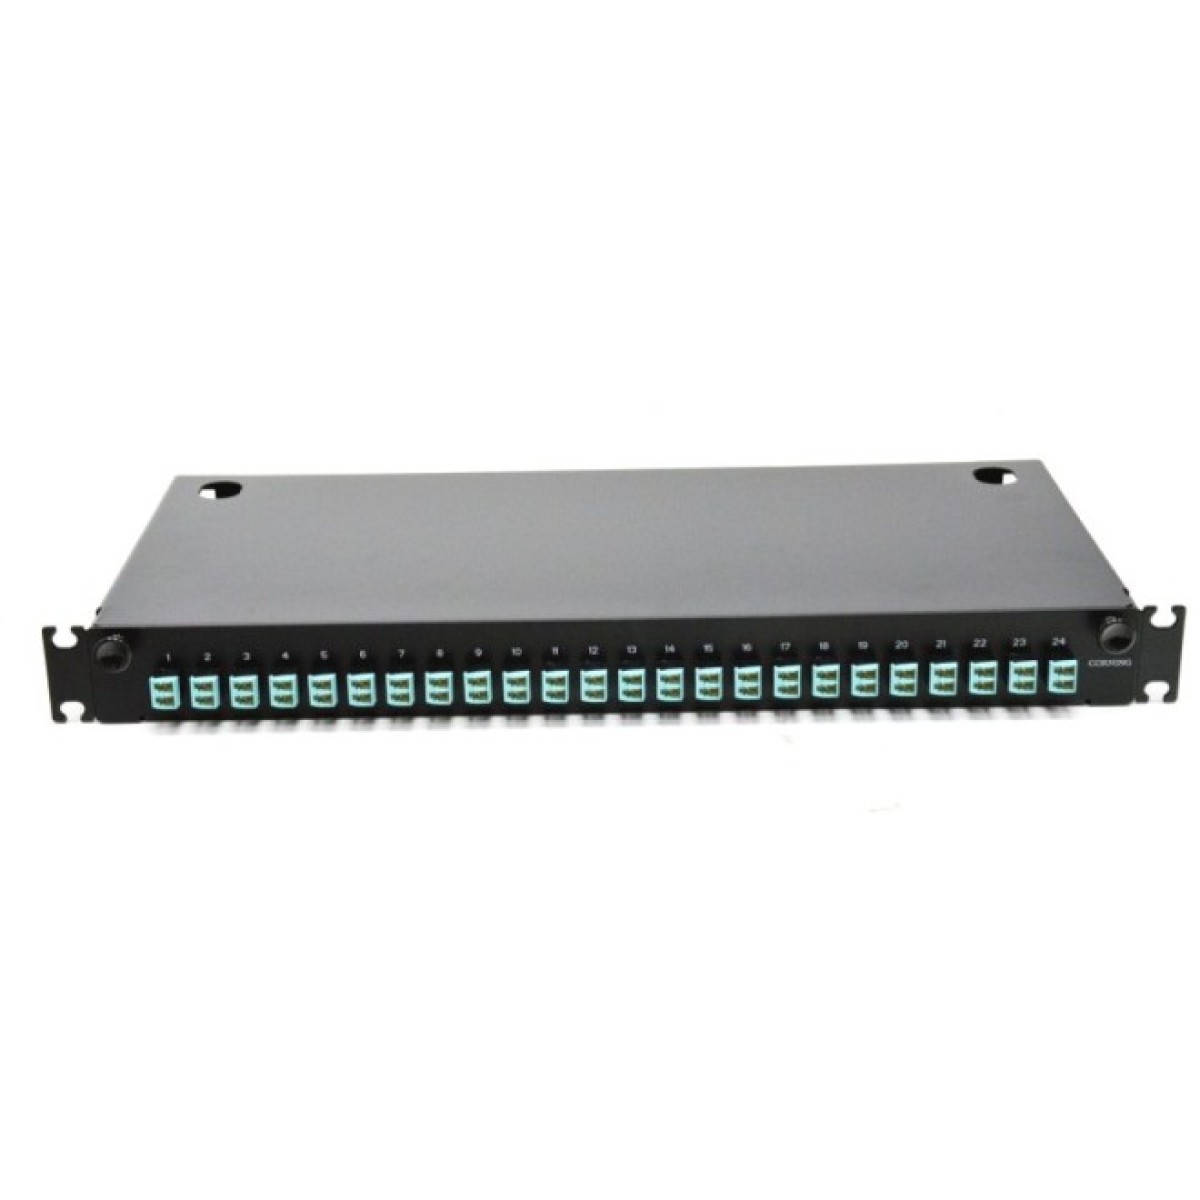 ВО патч-панель LAN1 с 24xLC Duplex Адапт., 48 пигтейл., Сплайс-кассетами, MM, OM3/OM4, 1U, выдвижная, черная, Corning 98_98.jpg - фото 5